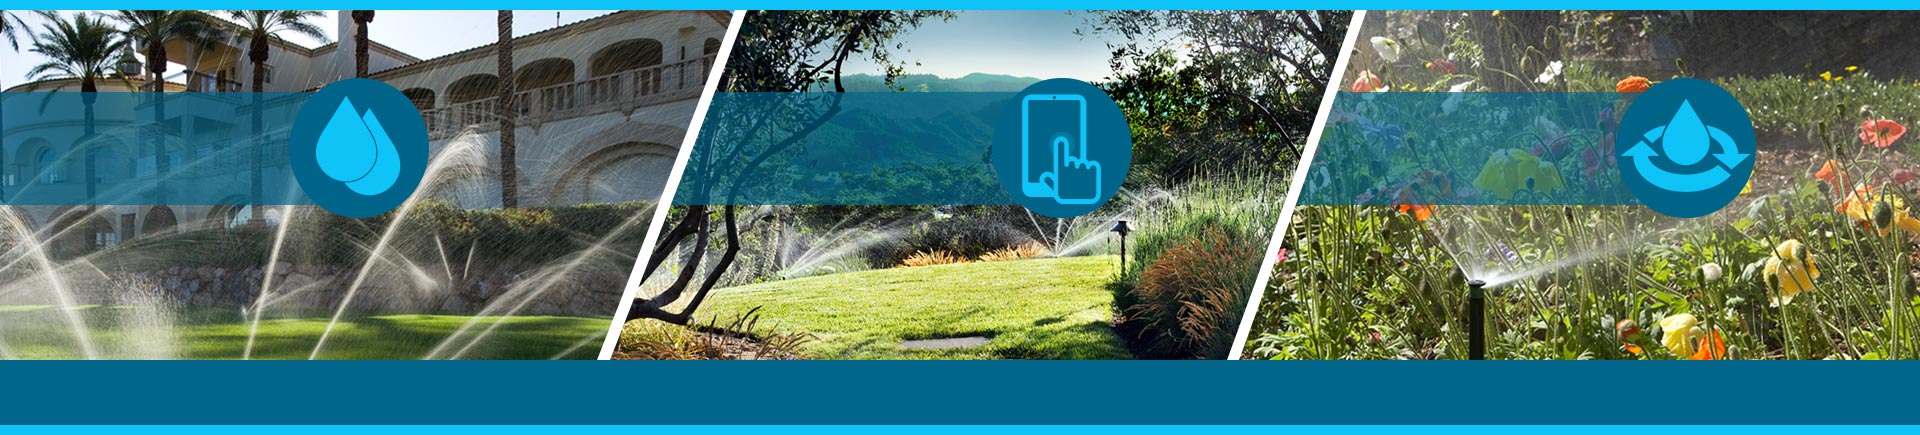 Экономия воды, дистанционное управление и онлайн-обслуживание систем полива для клиентов